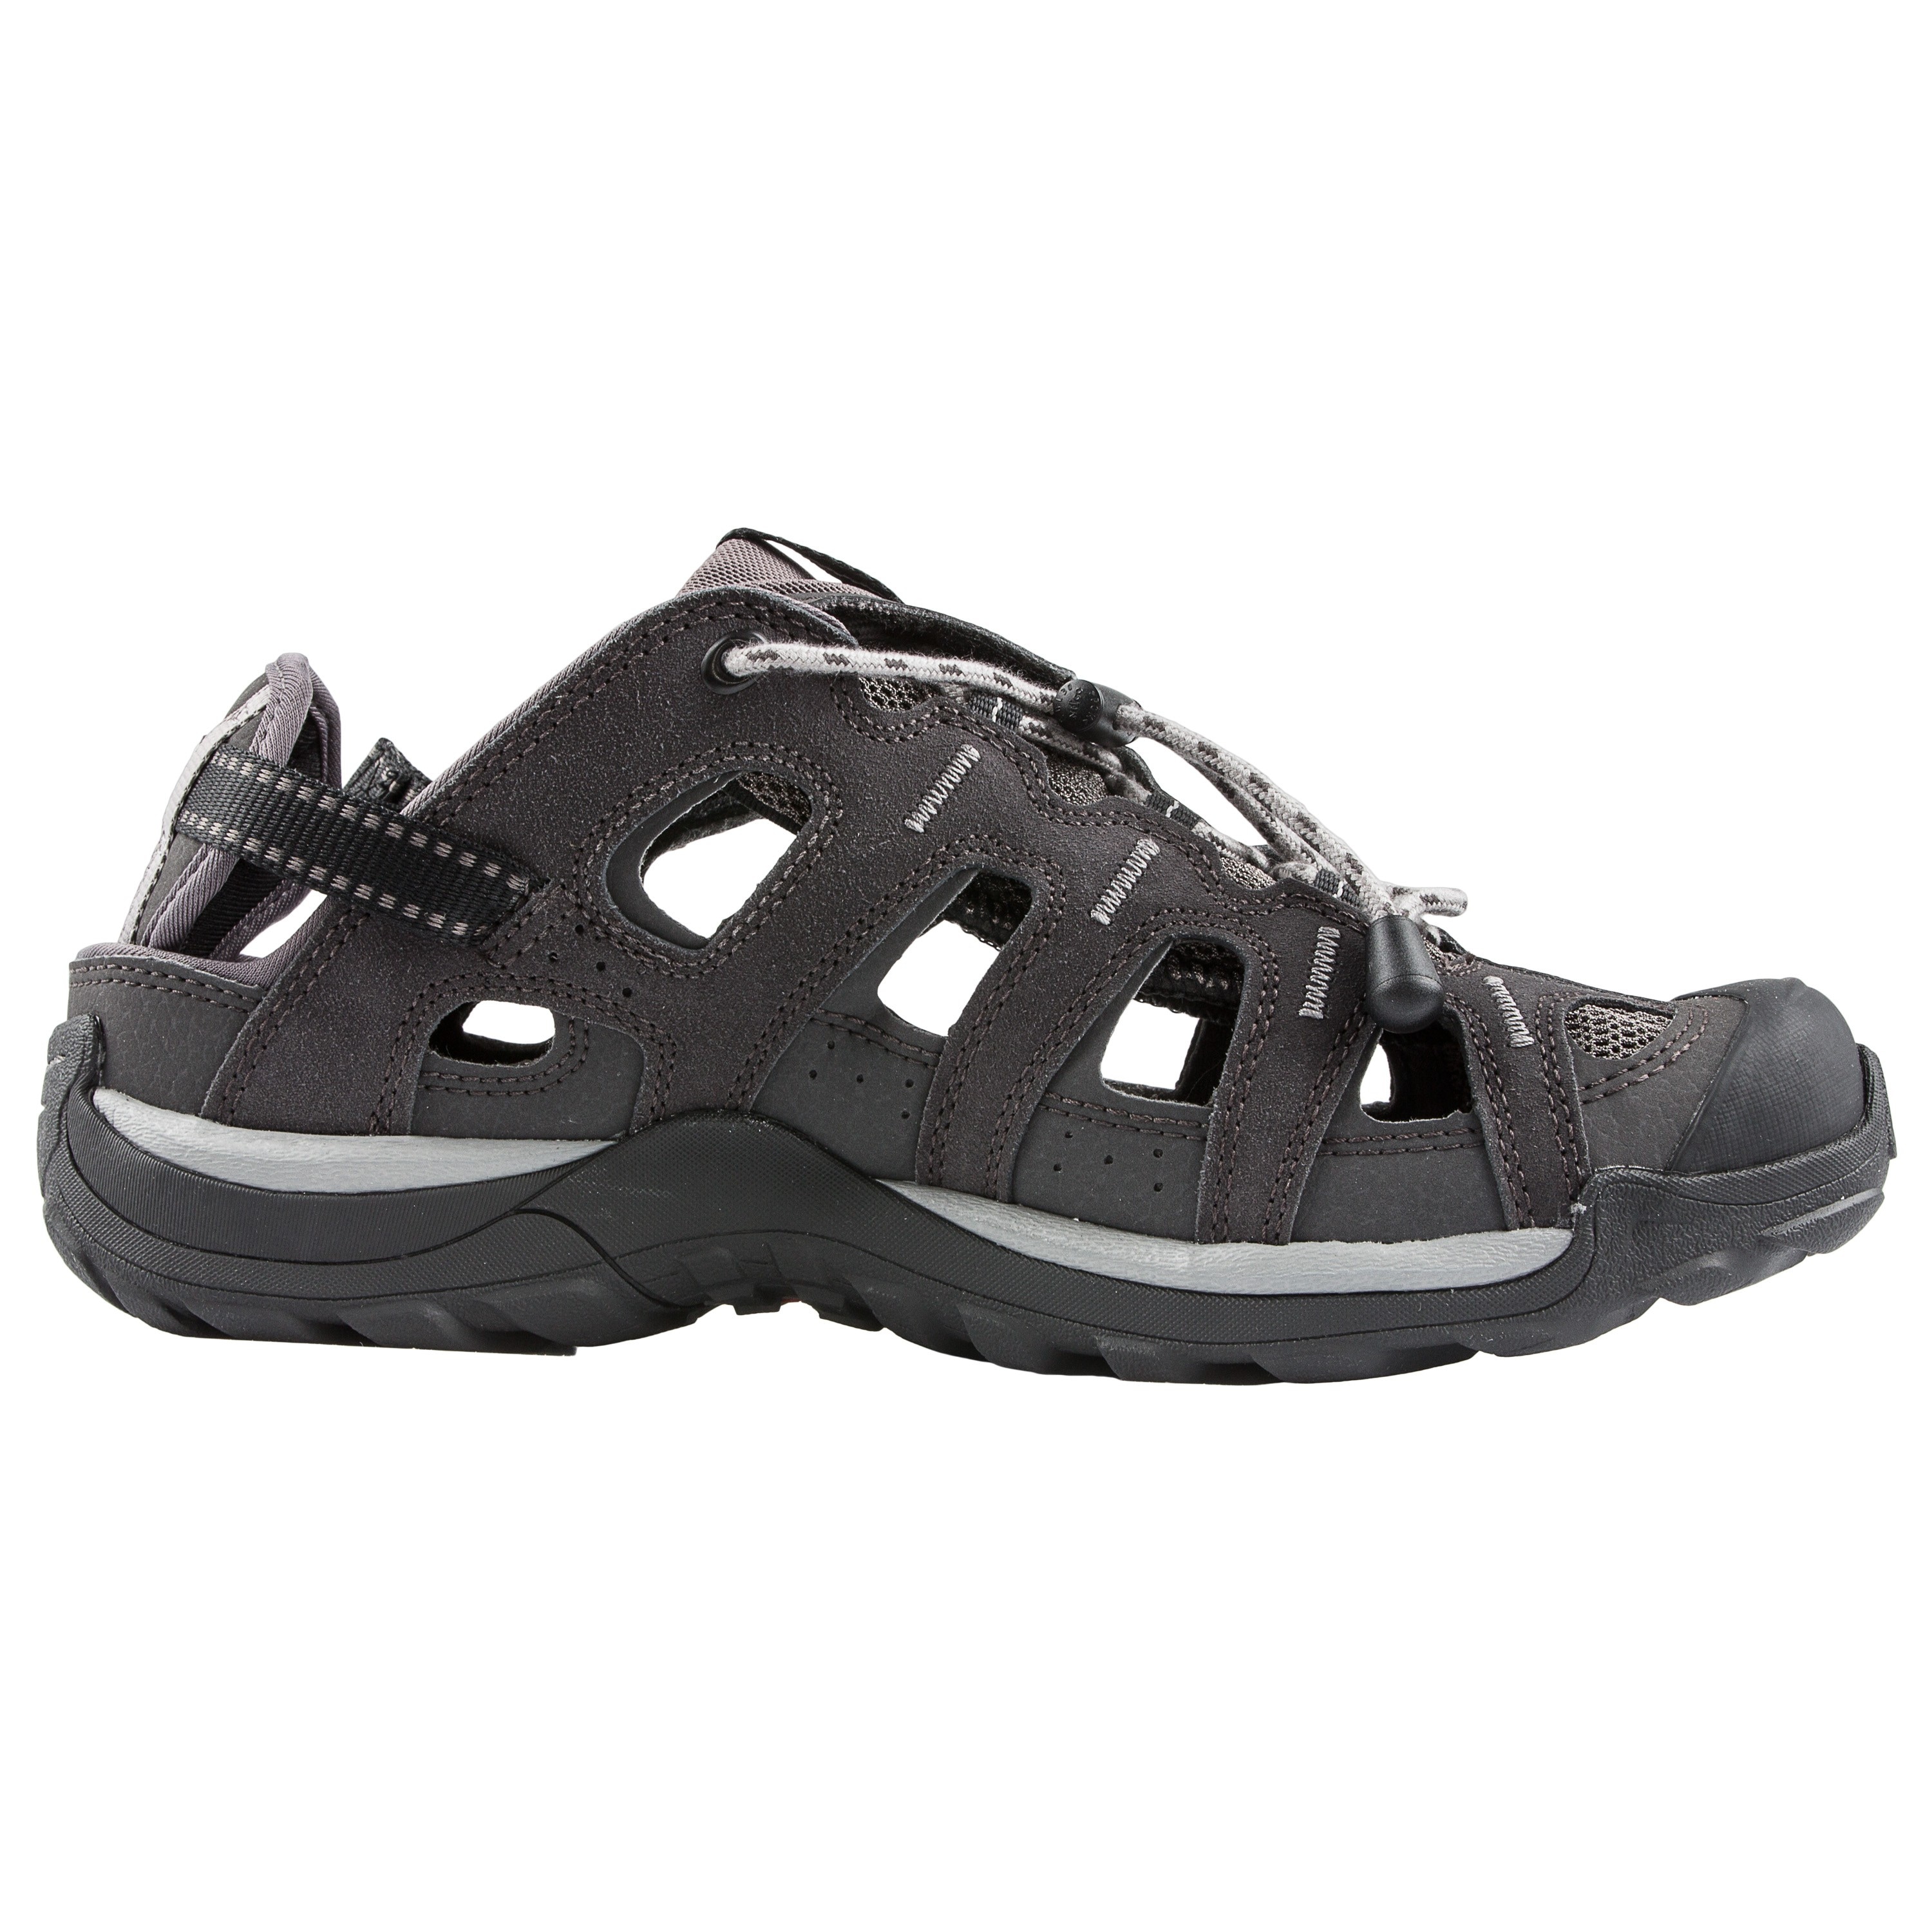 Salomon Outdoor Sandals Epic Cabrio black | Salomon Outdoor Sandals Epic Cabrio 2 black Sandals | Footwear | Clothing